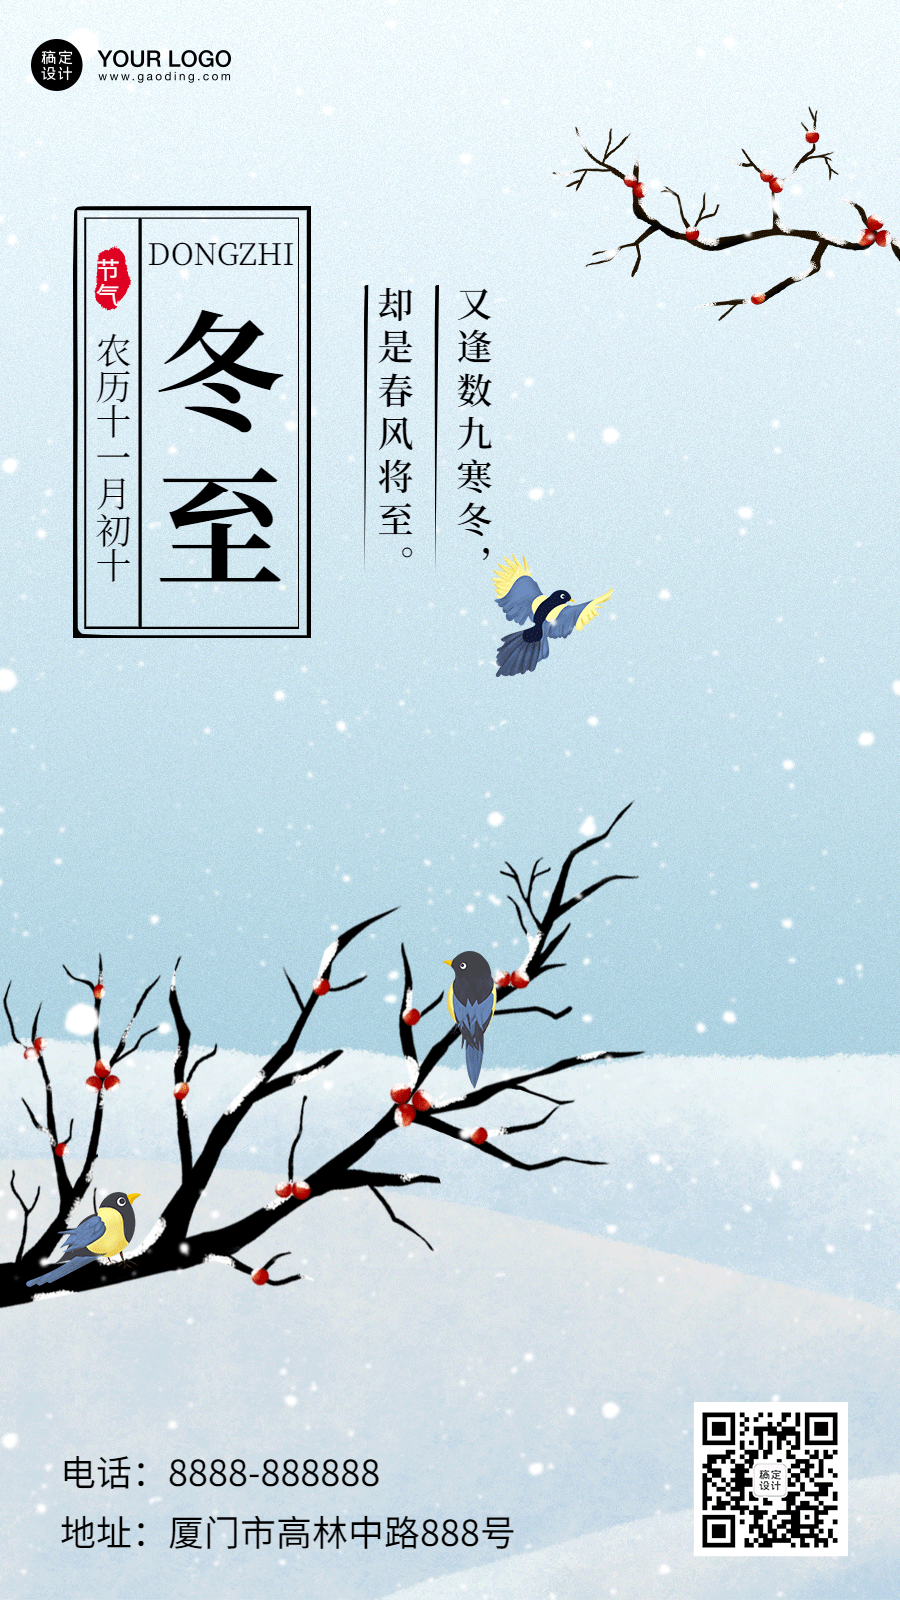 冬至节气祝福手绘插画动态海报预览效果